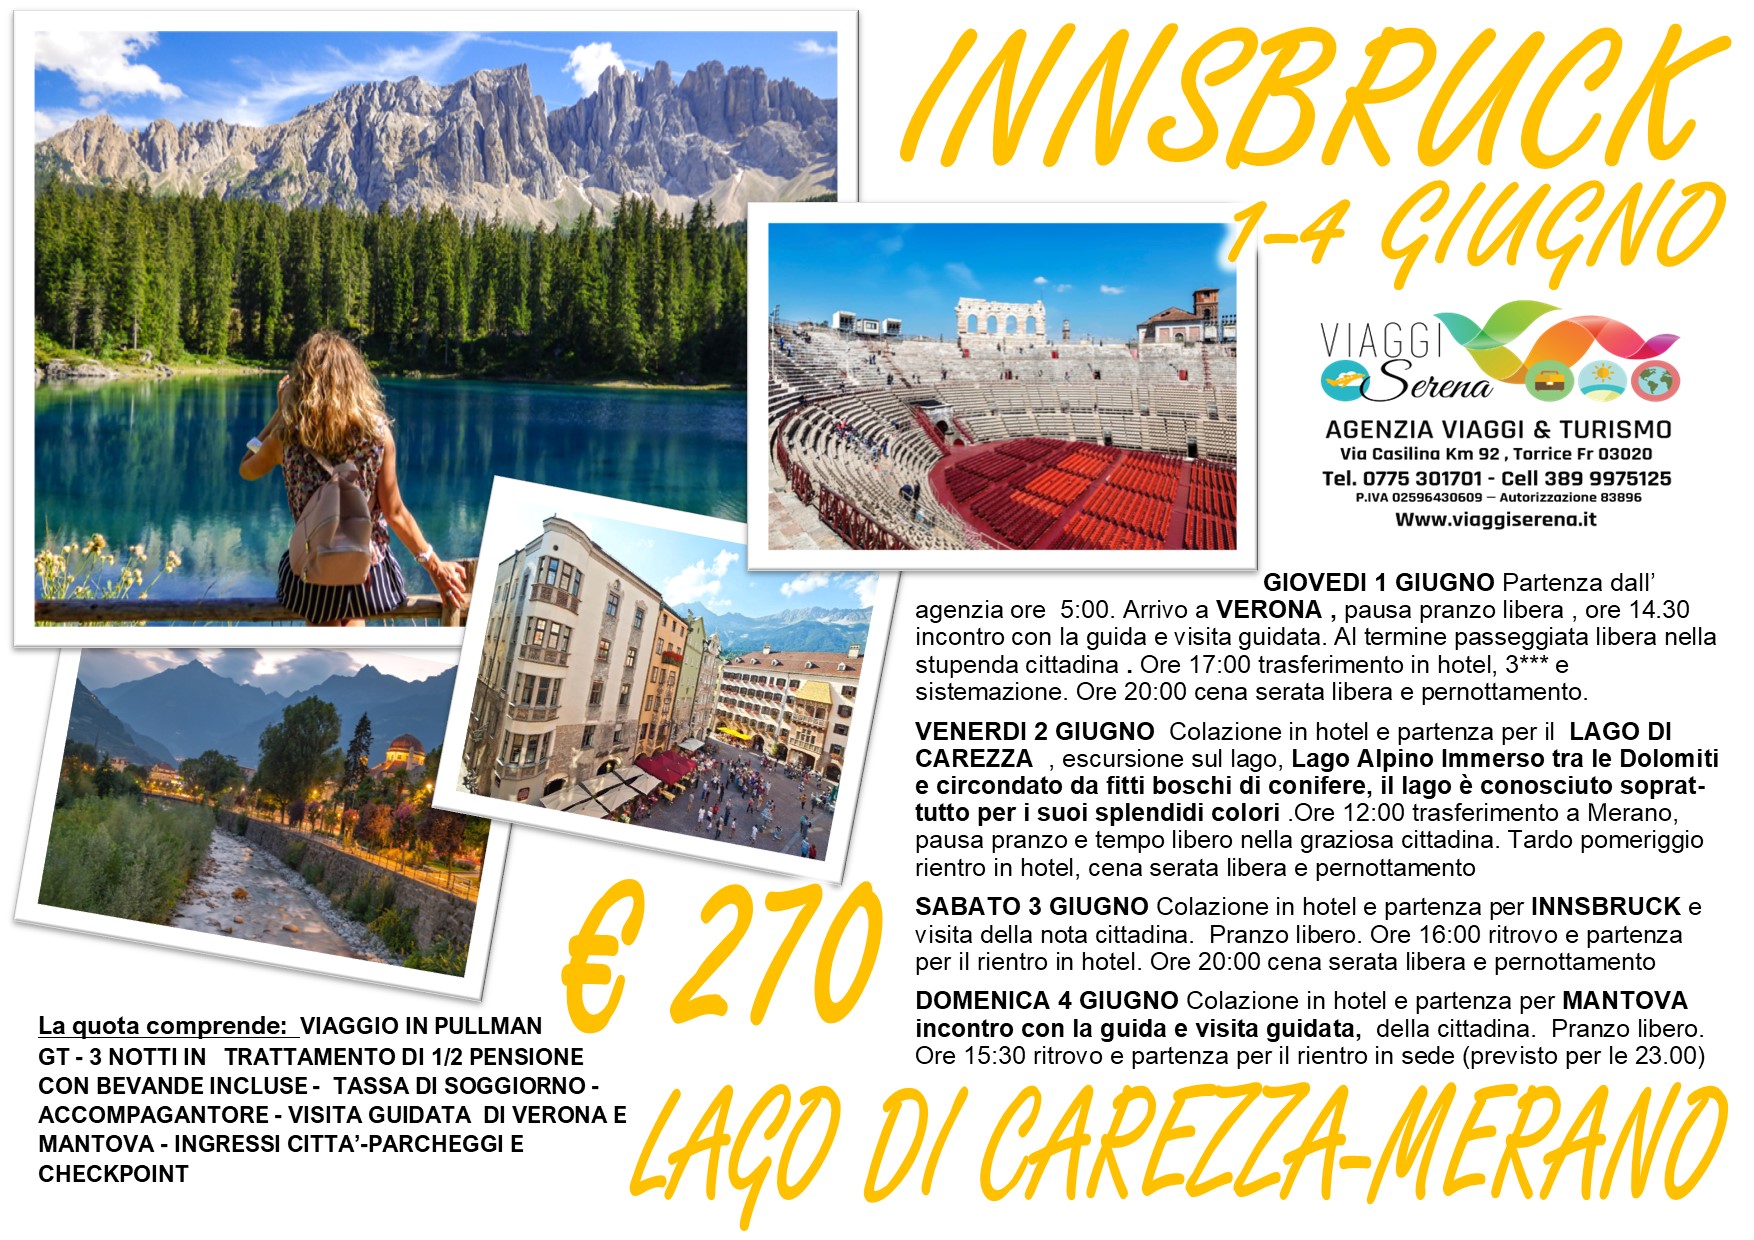 Viaggi di Gruppo: Innsbruck , Lago di Carezza, Merano & Mantova 1-4 Giugno  € 270,00